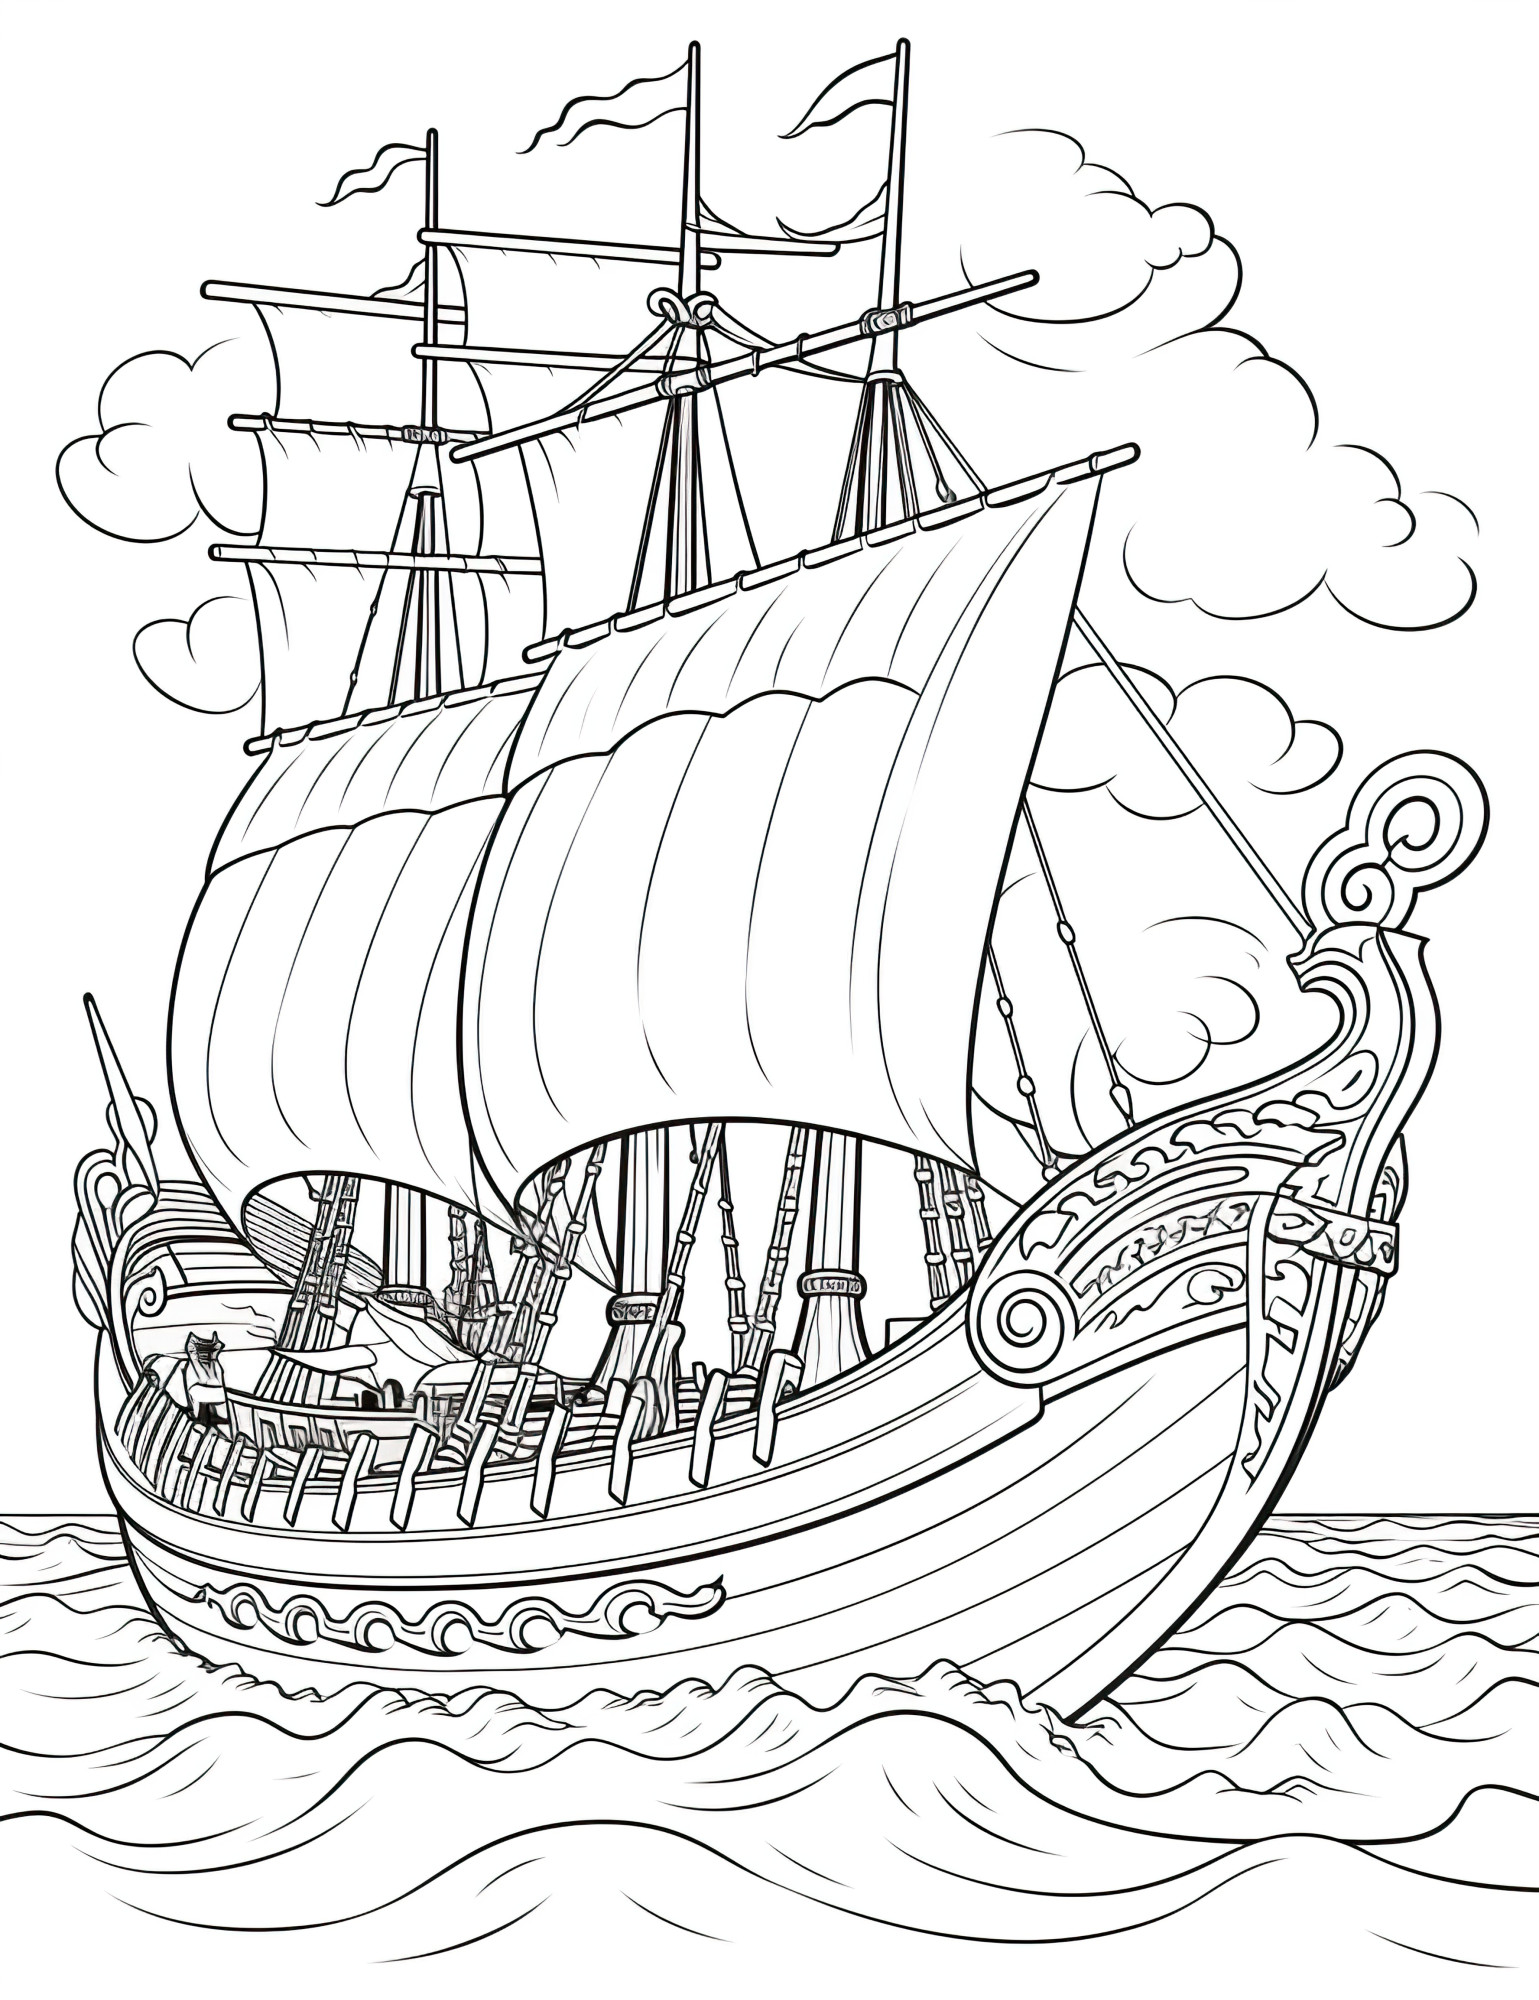 Раскраска для детей: исторический корабль с парусами в океане